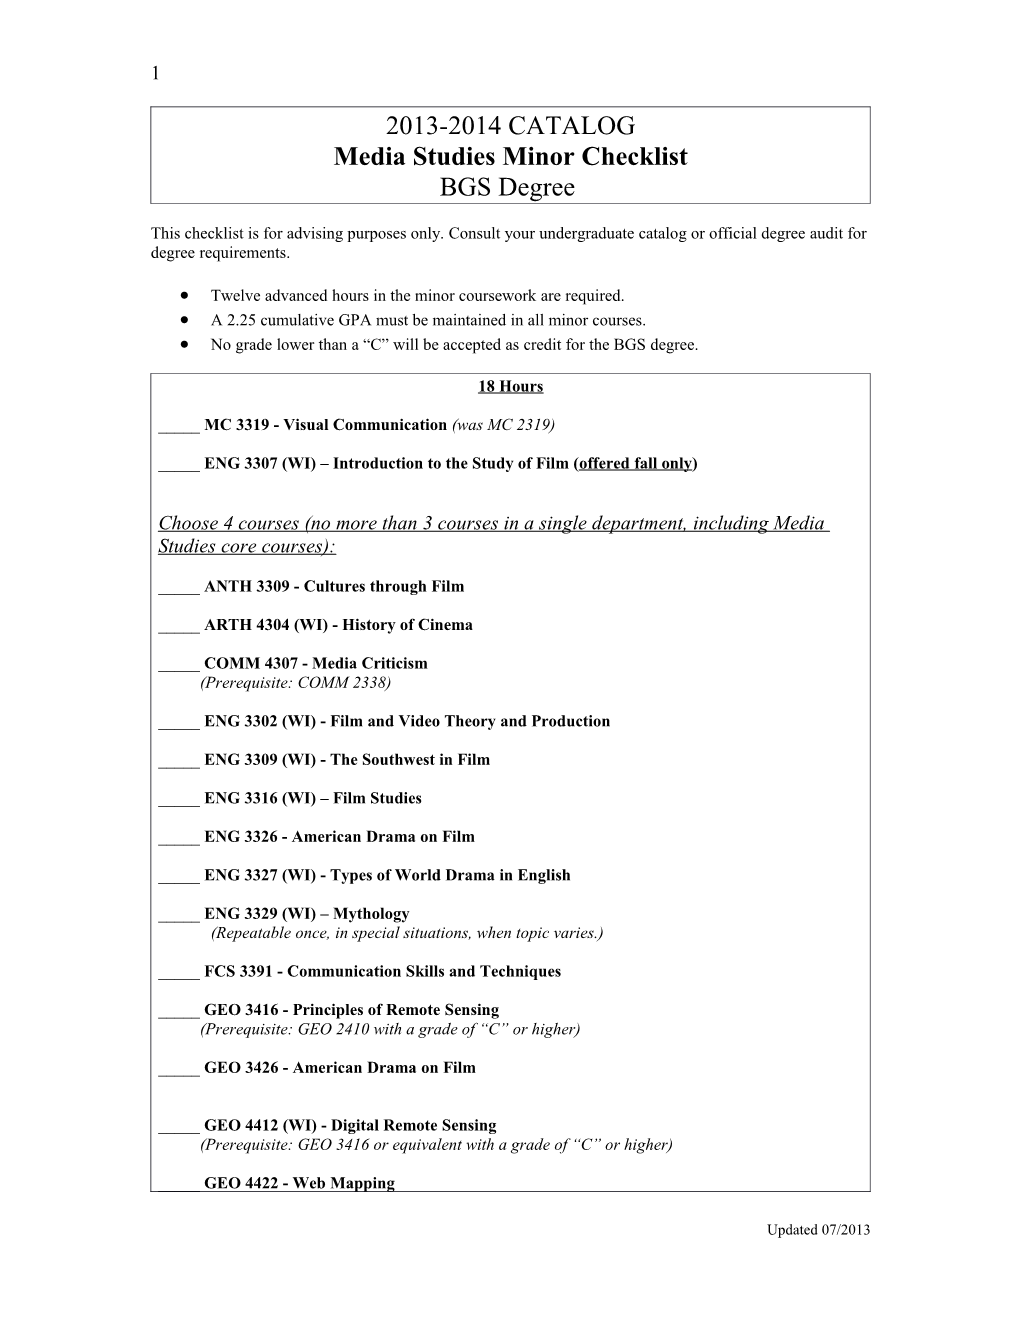 Media Studies Minor Checklist